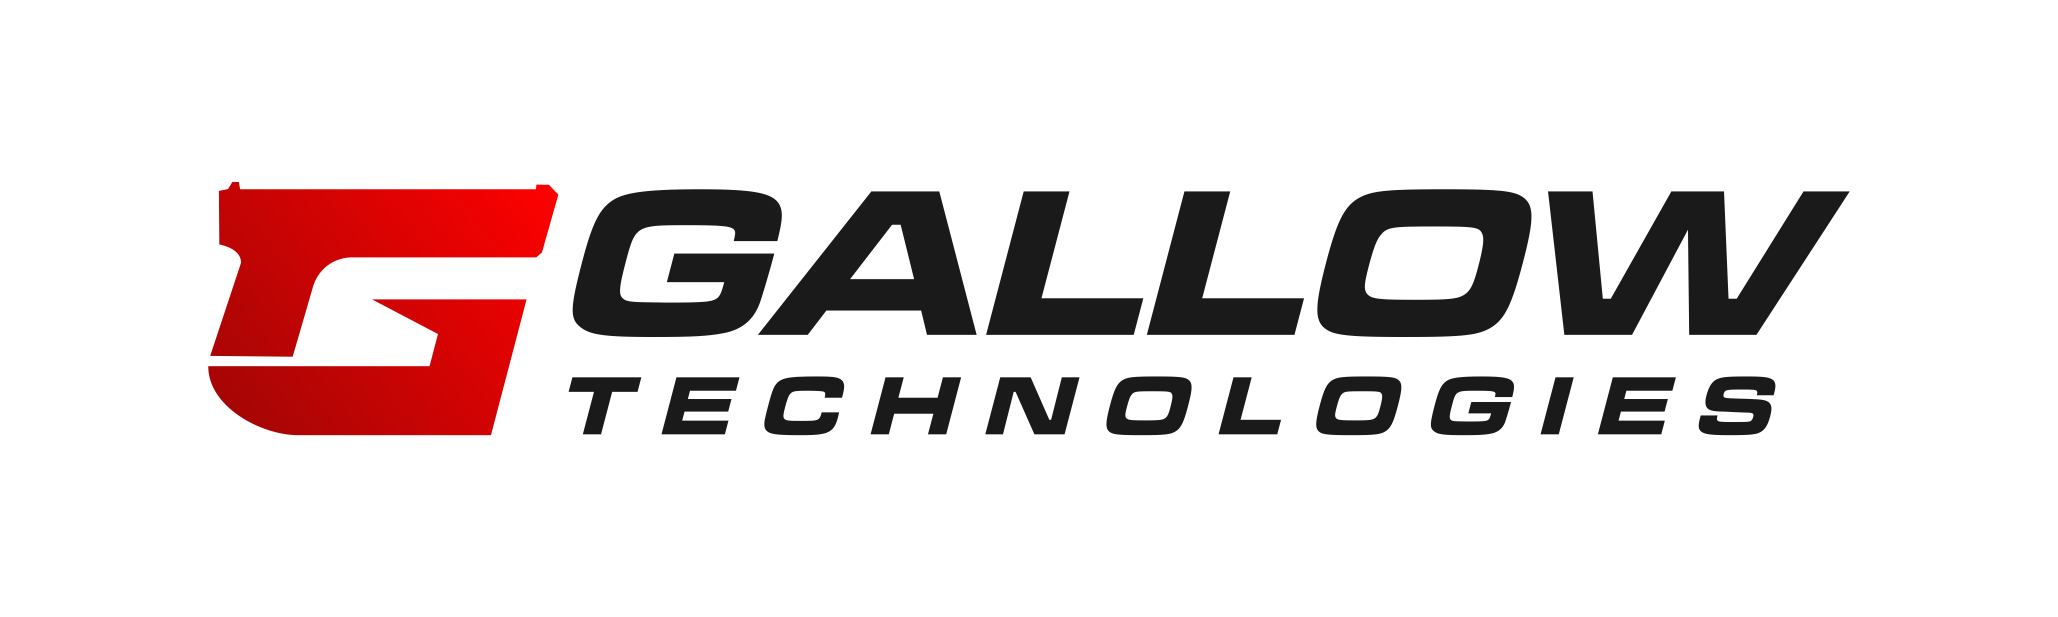 Gallowtech Technologies